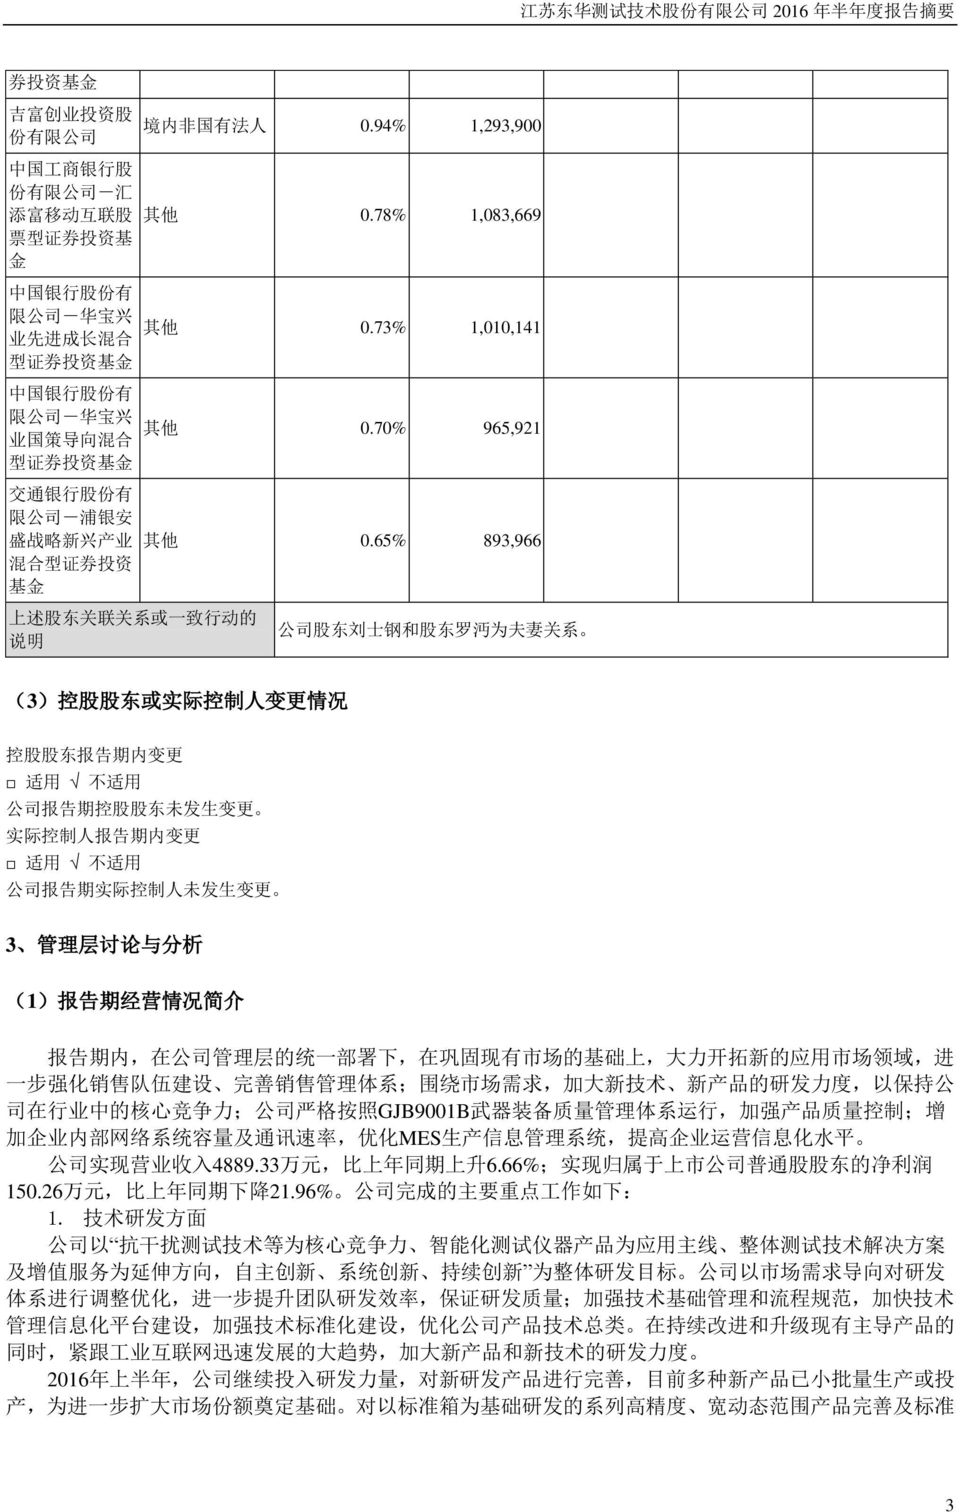 公 司 - 浦 银 安 盛 战 略 新 兴 产 业 混 合 型 证 券 投 资 基 金 其 他 0.78% 1,083,669 其 他 0.73% 1,010,141 其 他 0.70% 965,921 其 他 0.